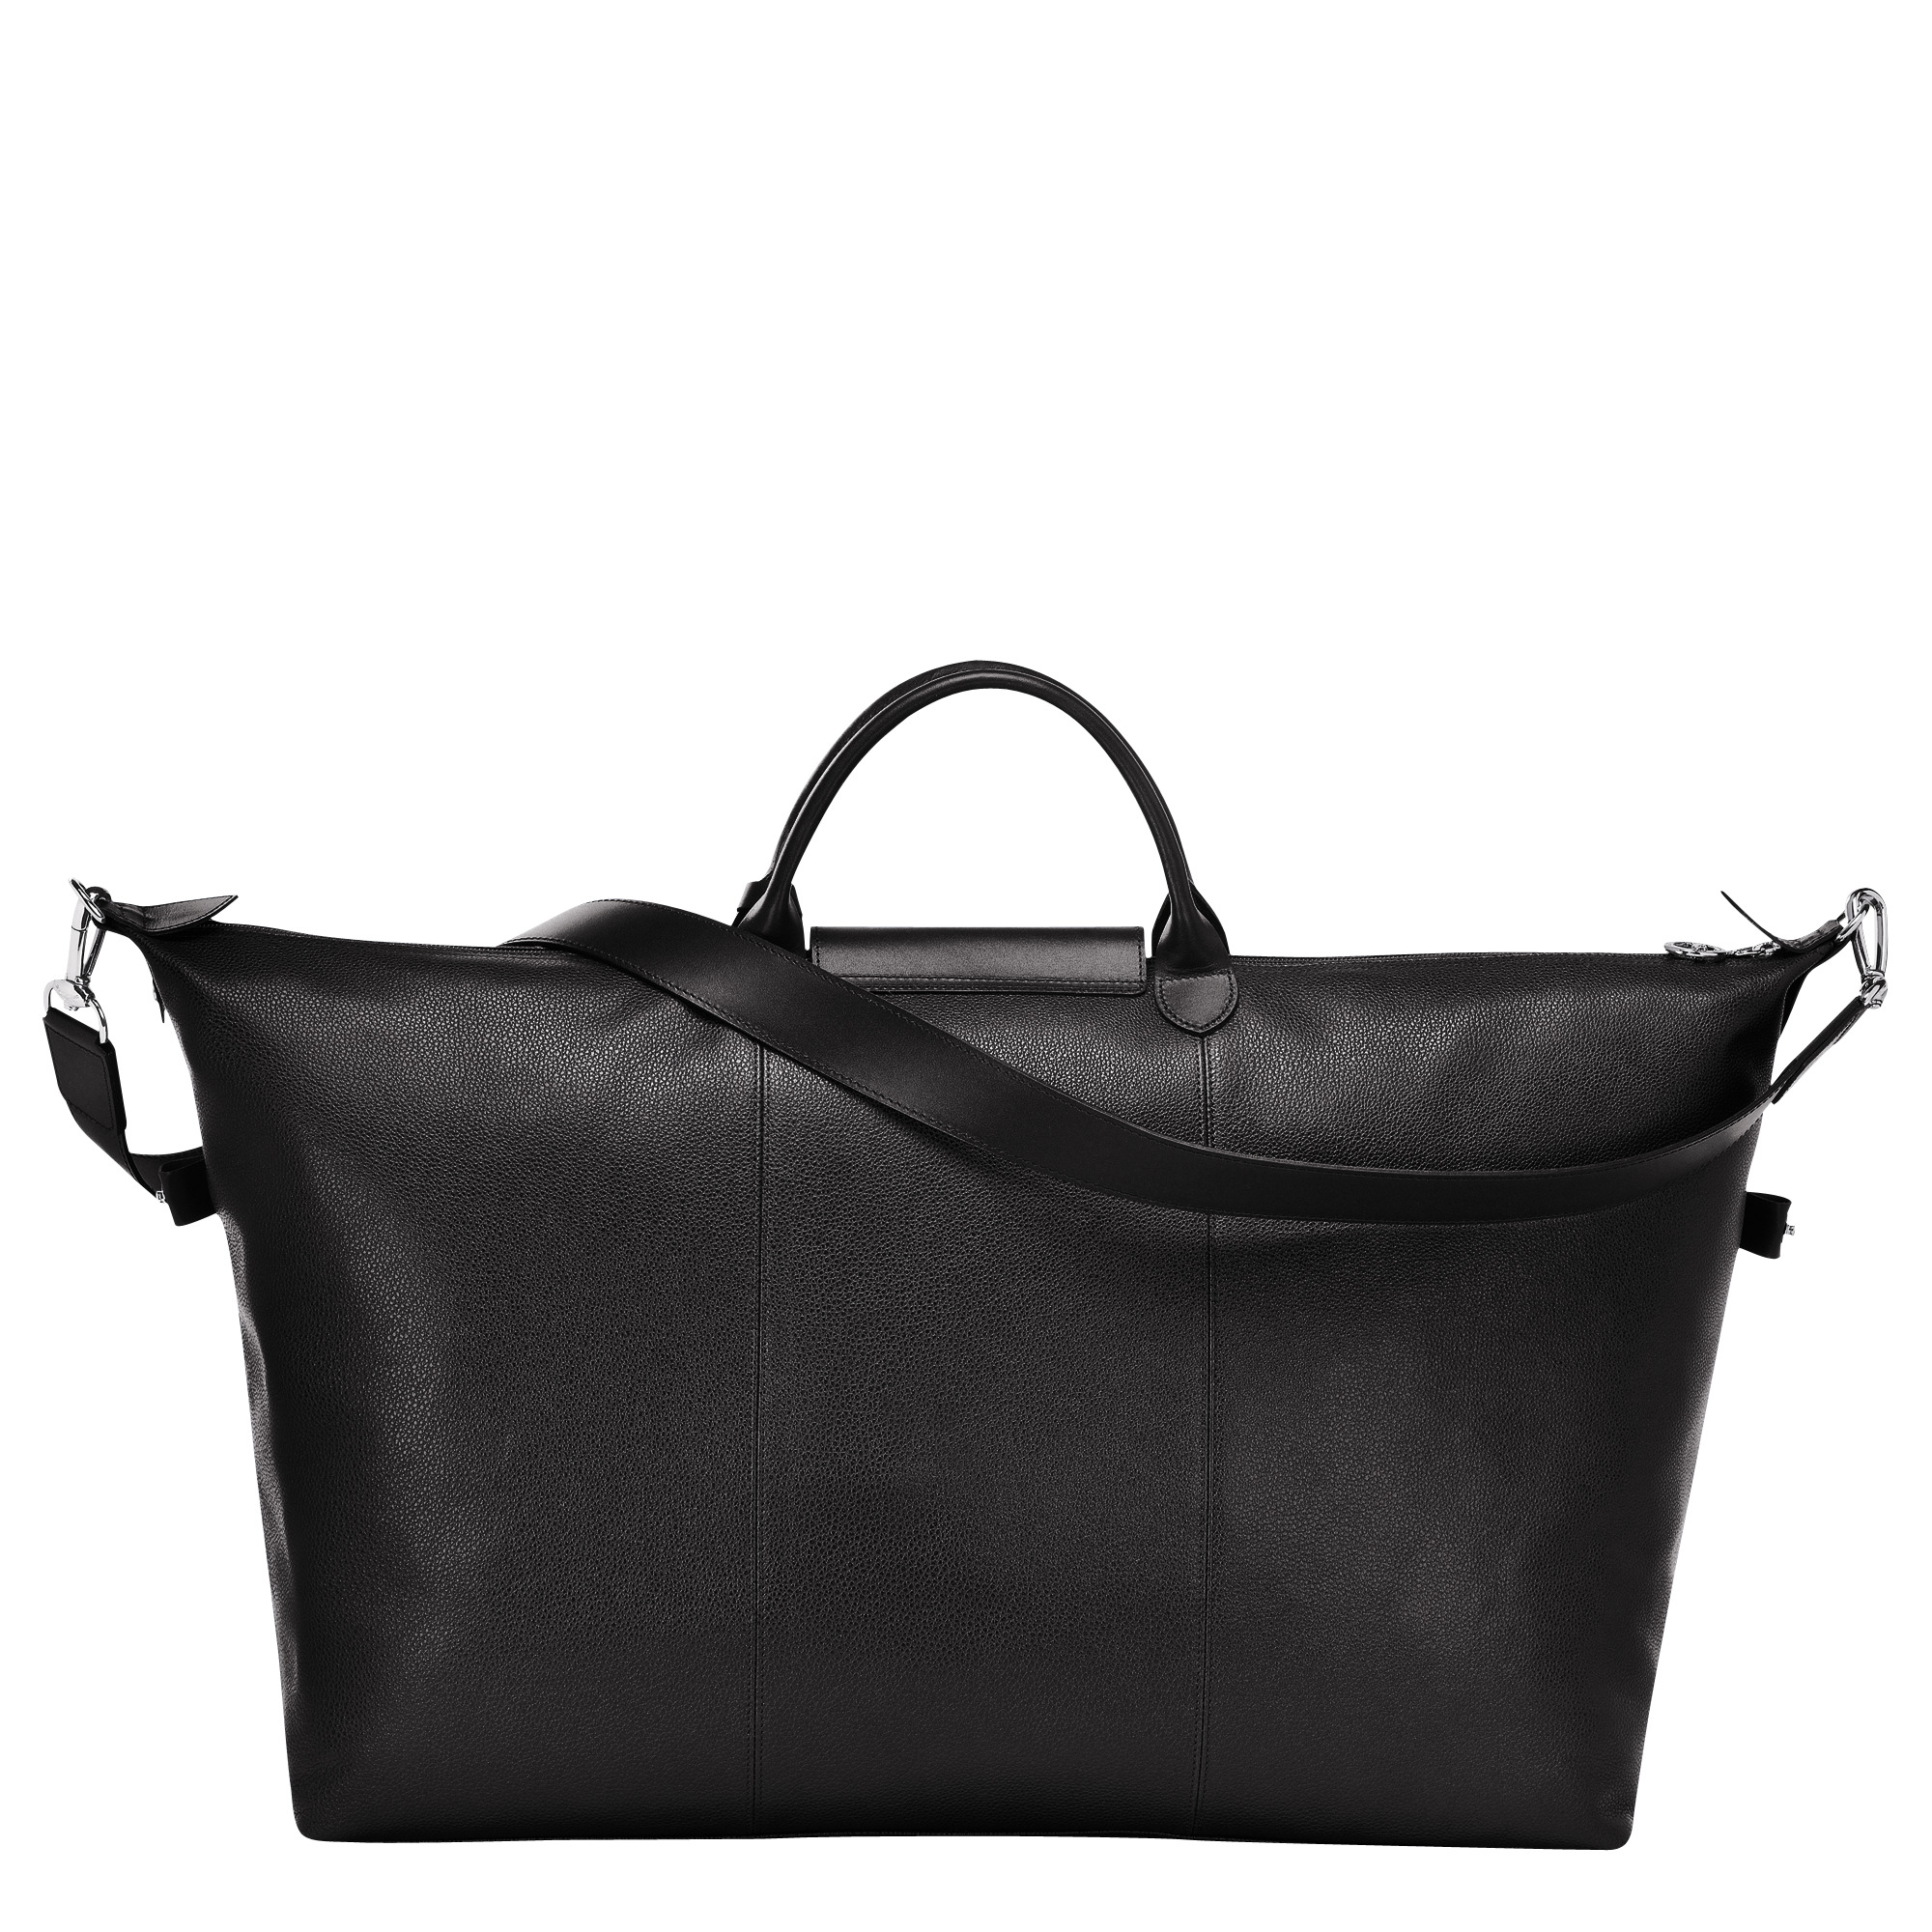 Le Foulonné S Travel bag Black - Leather - 4